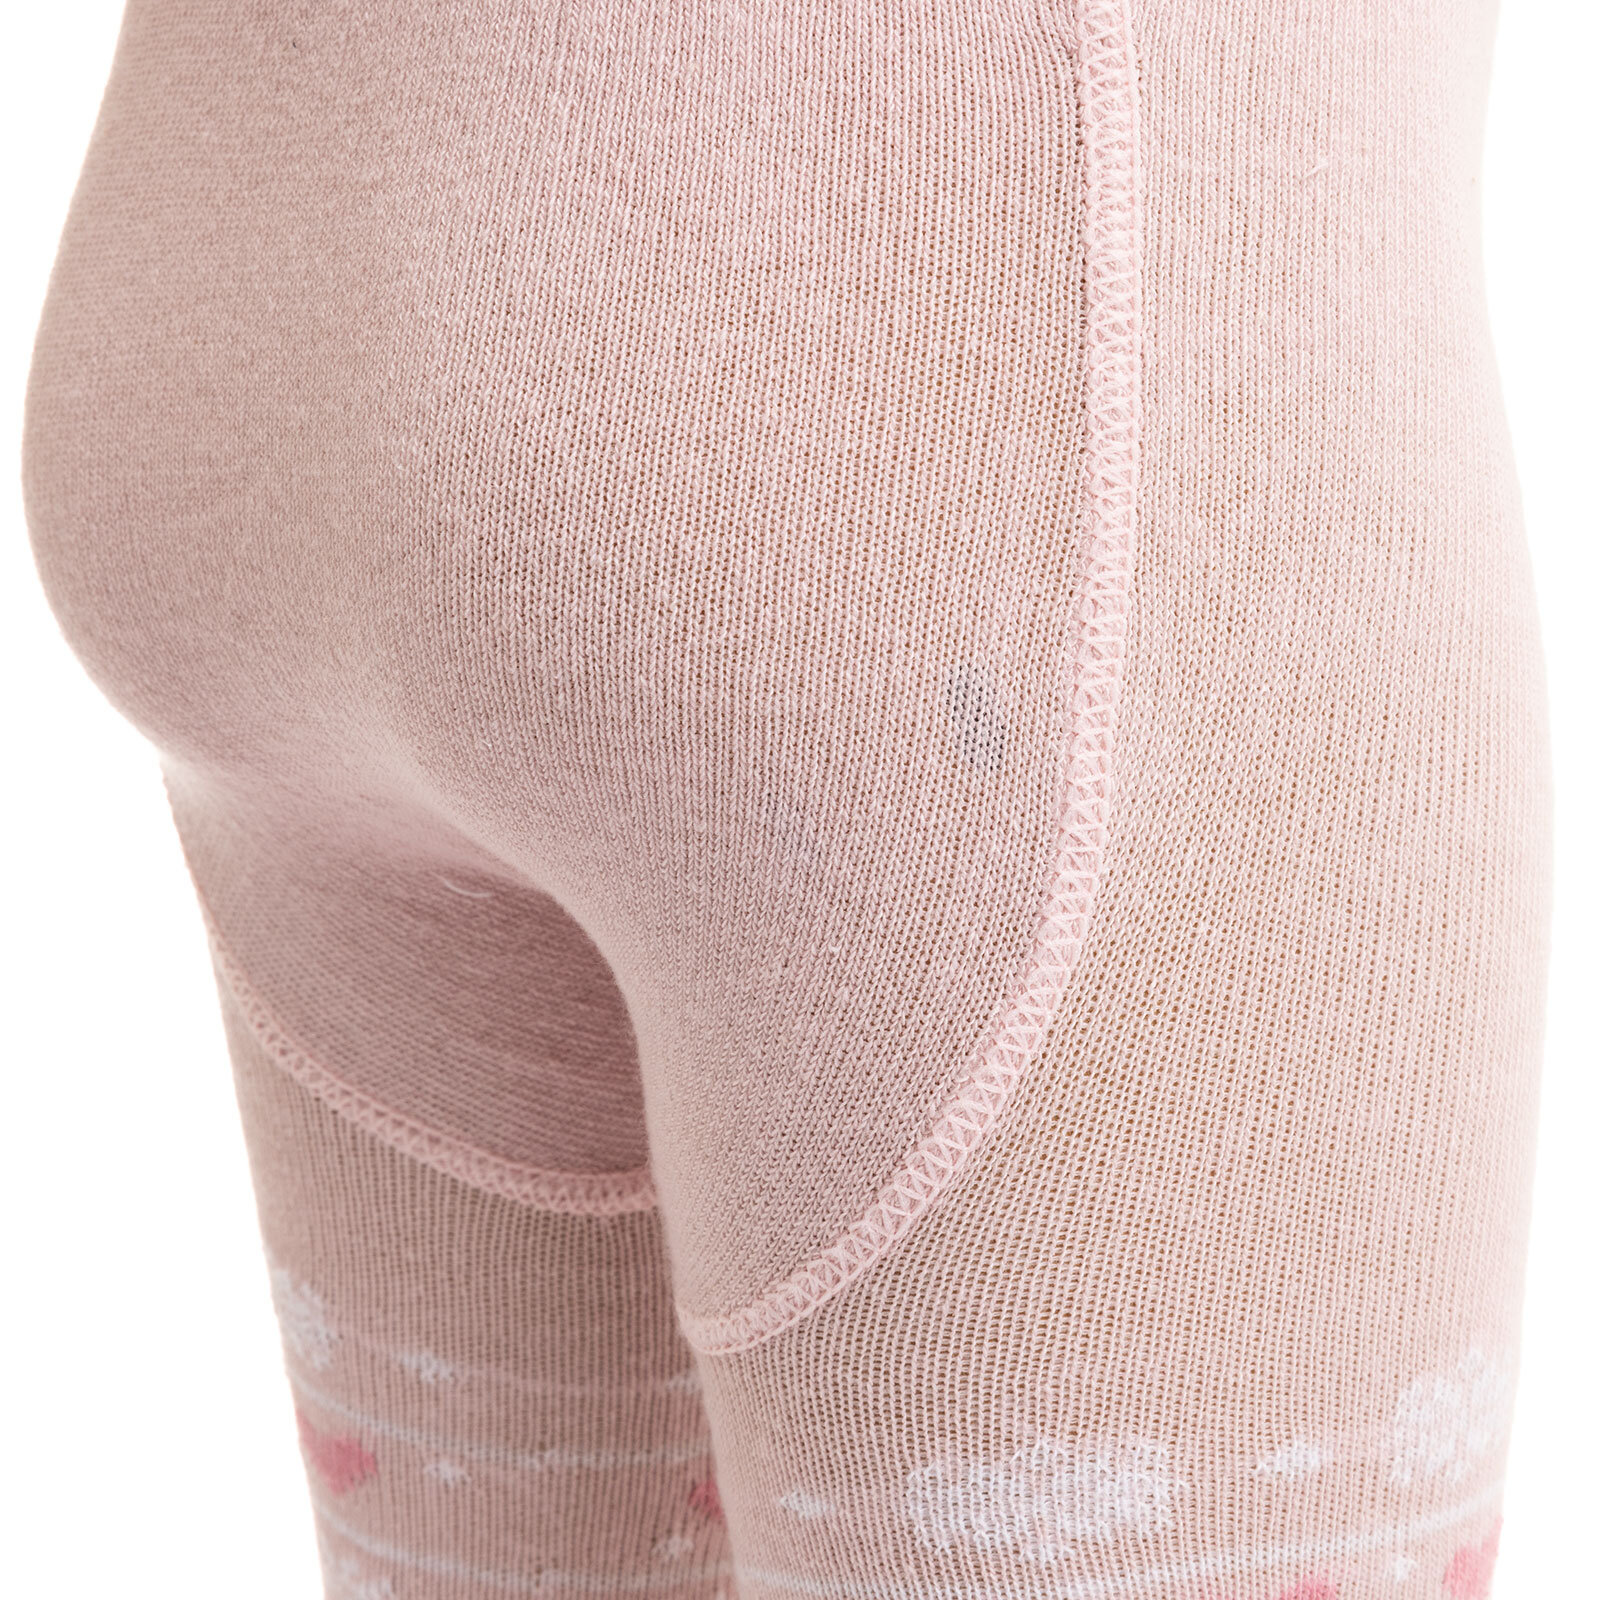 Desenli Külotlu Çorap Kız Bebek